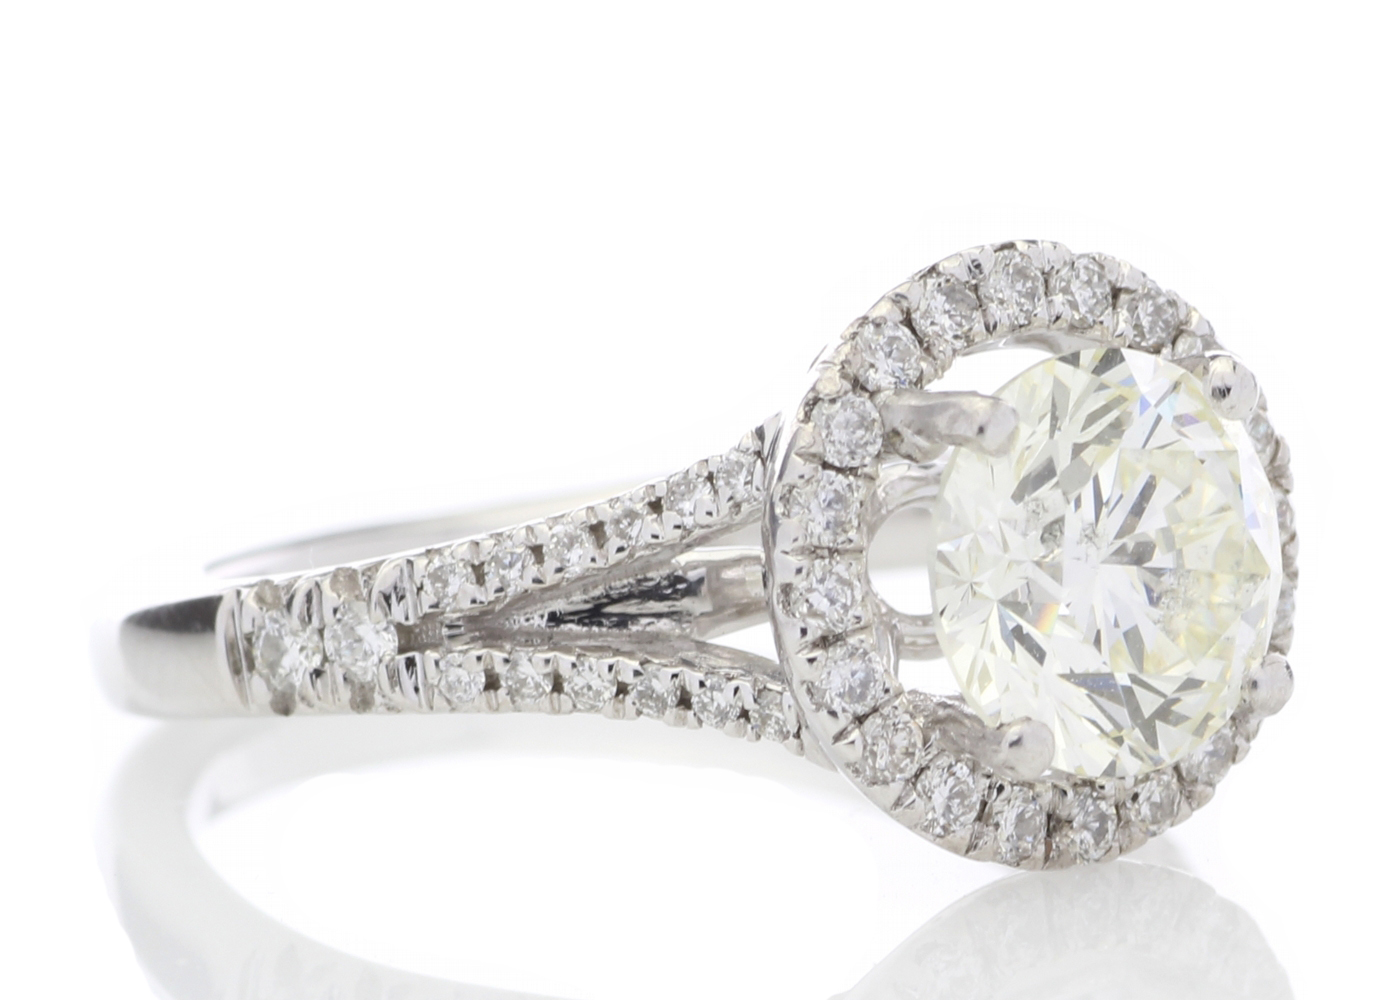 18k White Gold Halo Set Diamond Ring 1.98 Carats - Image 4 of 5